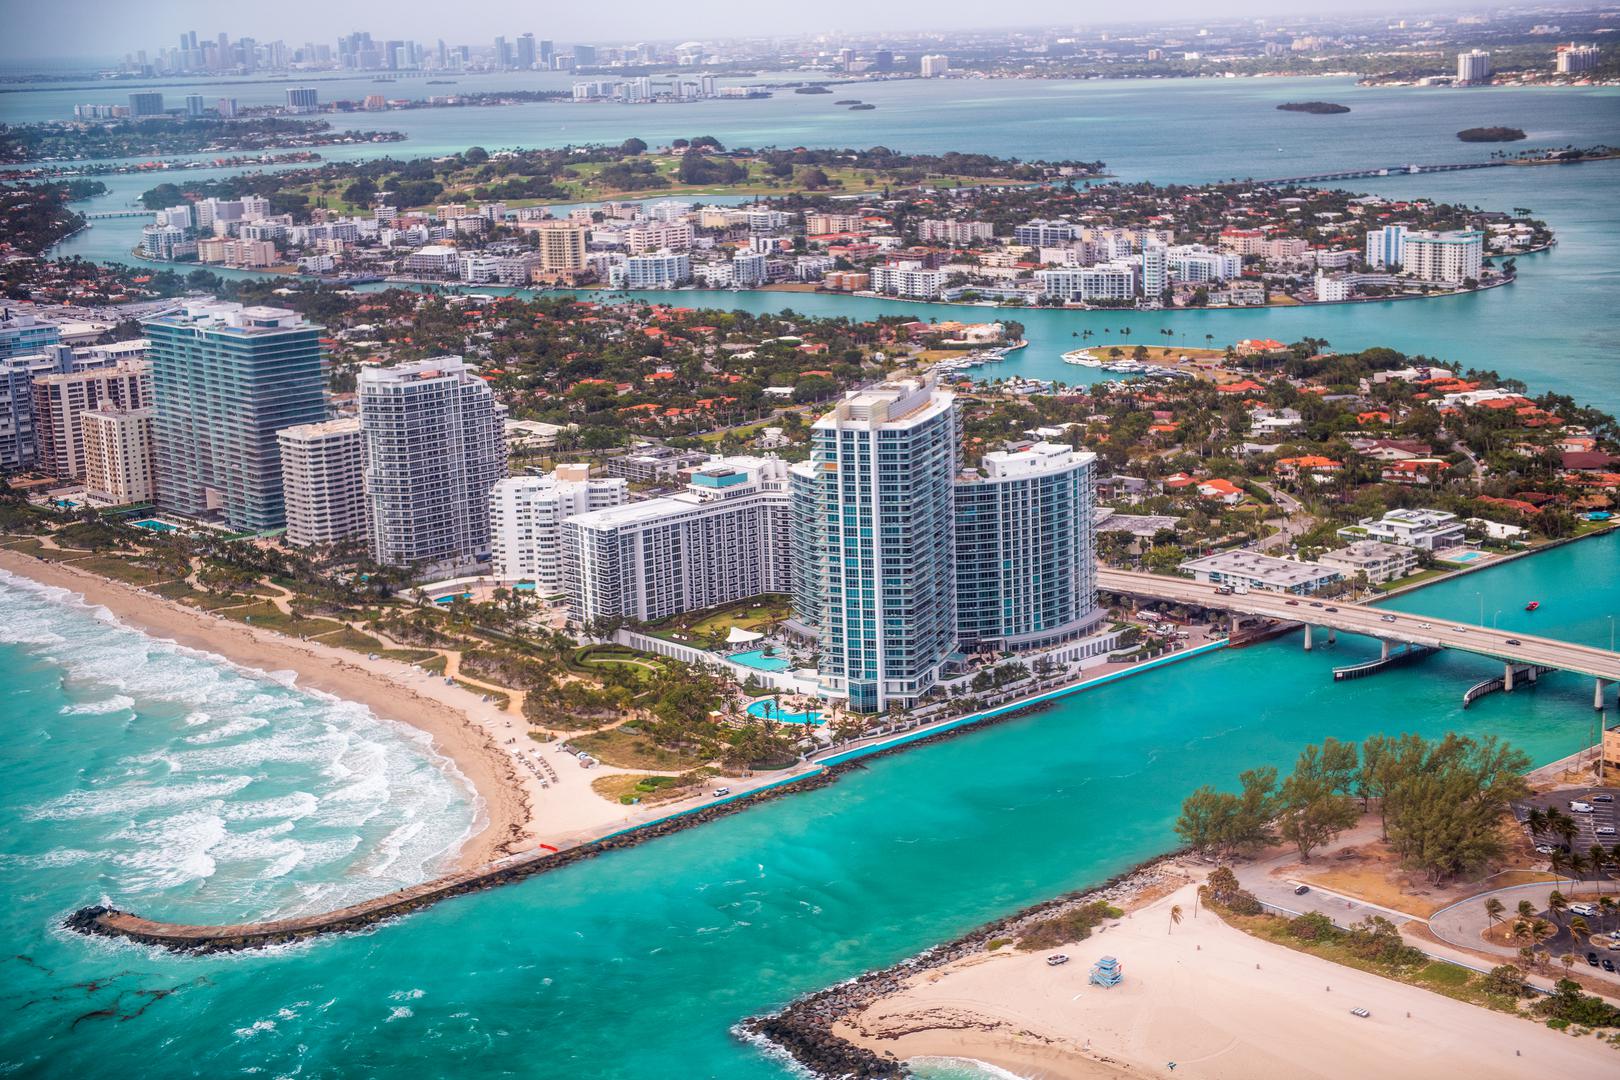 Haulover Beach Park, Miami, Florida: Najpopularnija javna nudistička plaža u Sjedinjenim Državama, Haulover, svake godine privuče više od 1,3 milijuna ljudi. Nudistički dio, označen na oba kraja ogradama, nudi iznajmljivanje ležaljki i suncobrana, kao i spasioce. Najveće su gužve tijekom Nacionalnog tjedna golišave rekreacije u srpnju i kad god Haulover pokušava postaviti novi Guinnessov svjetski rekord u golom kupanju.